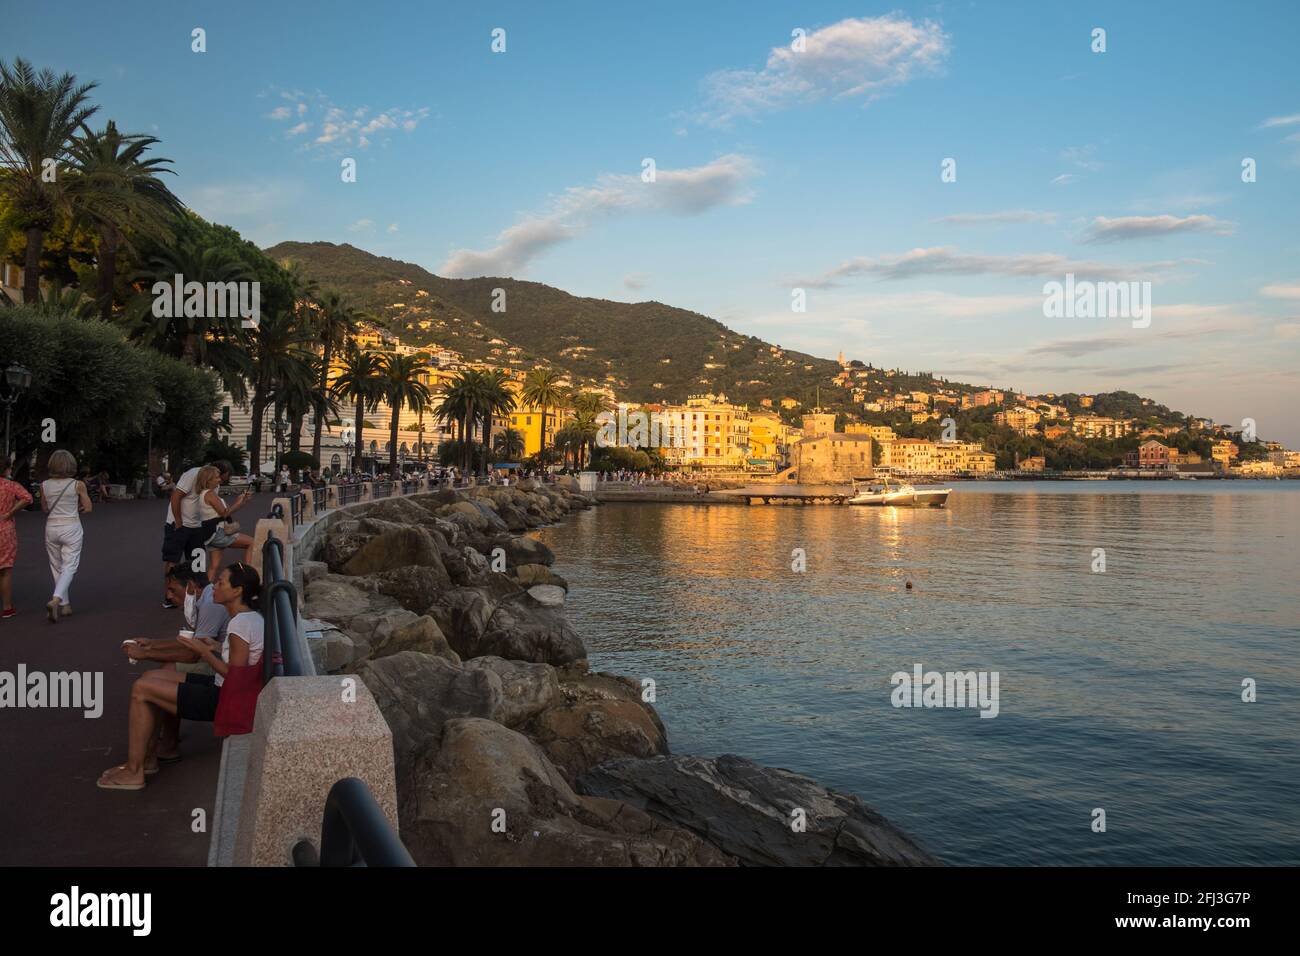 Les gens apprécient le 'lungomare' de Rapallo pendant l'été. Des rochers bordent la baie, tandis que des palmiers bordent la promenade. Banque D'Images